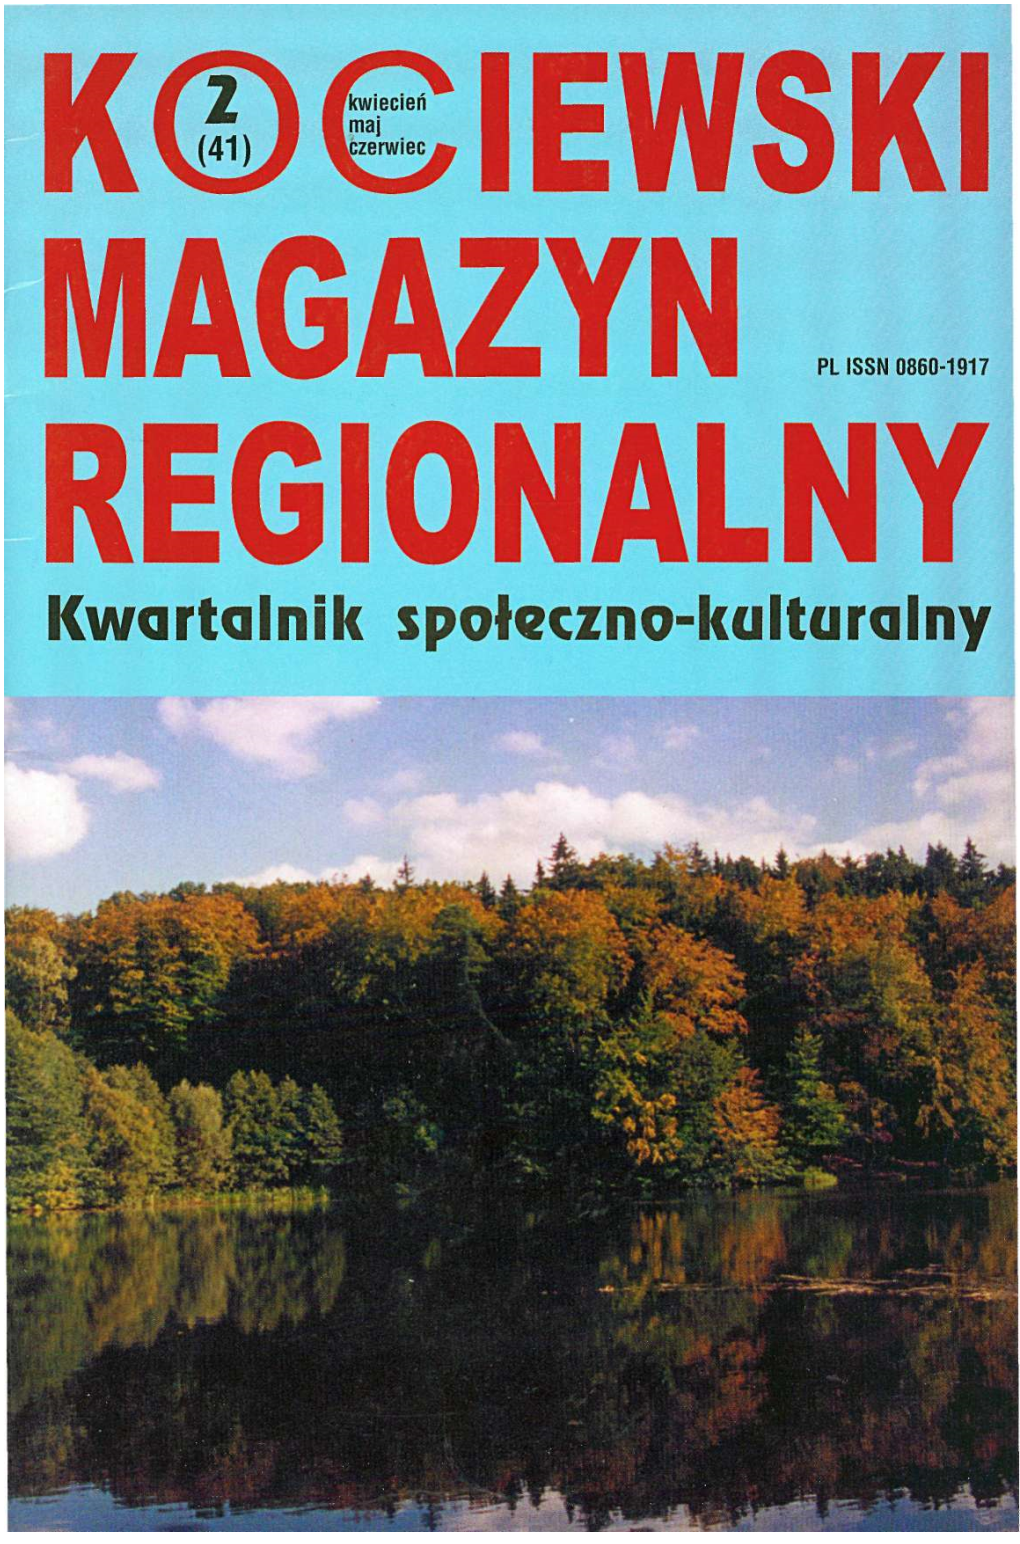 Kociewski Magazyn Regionalny" Ladzie, Warszawa 1993, S